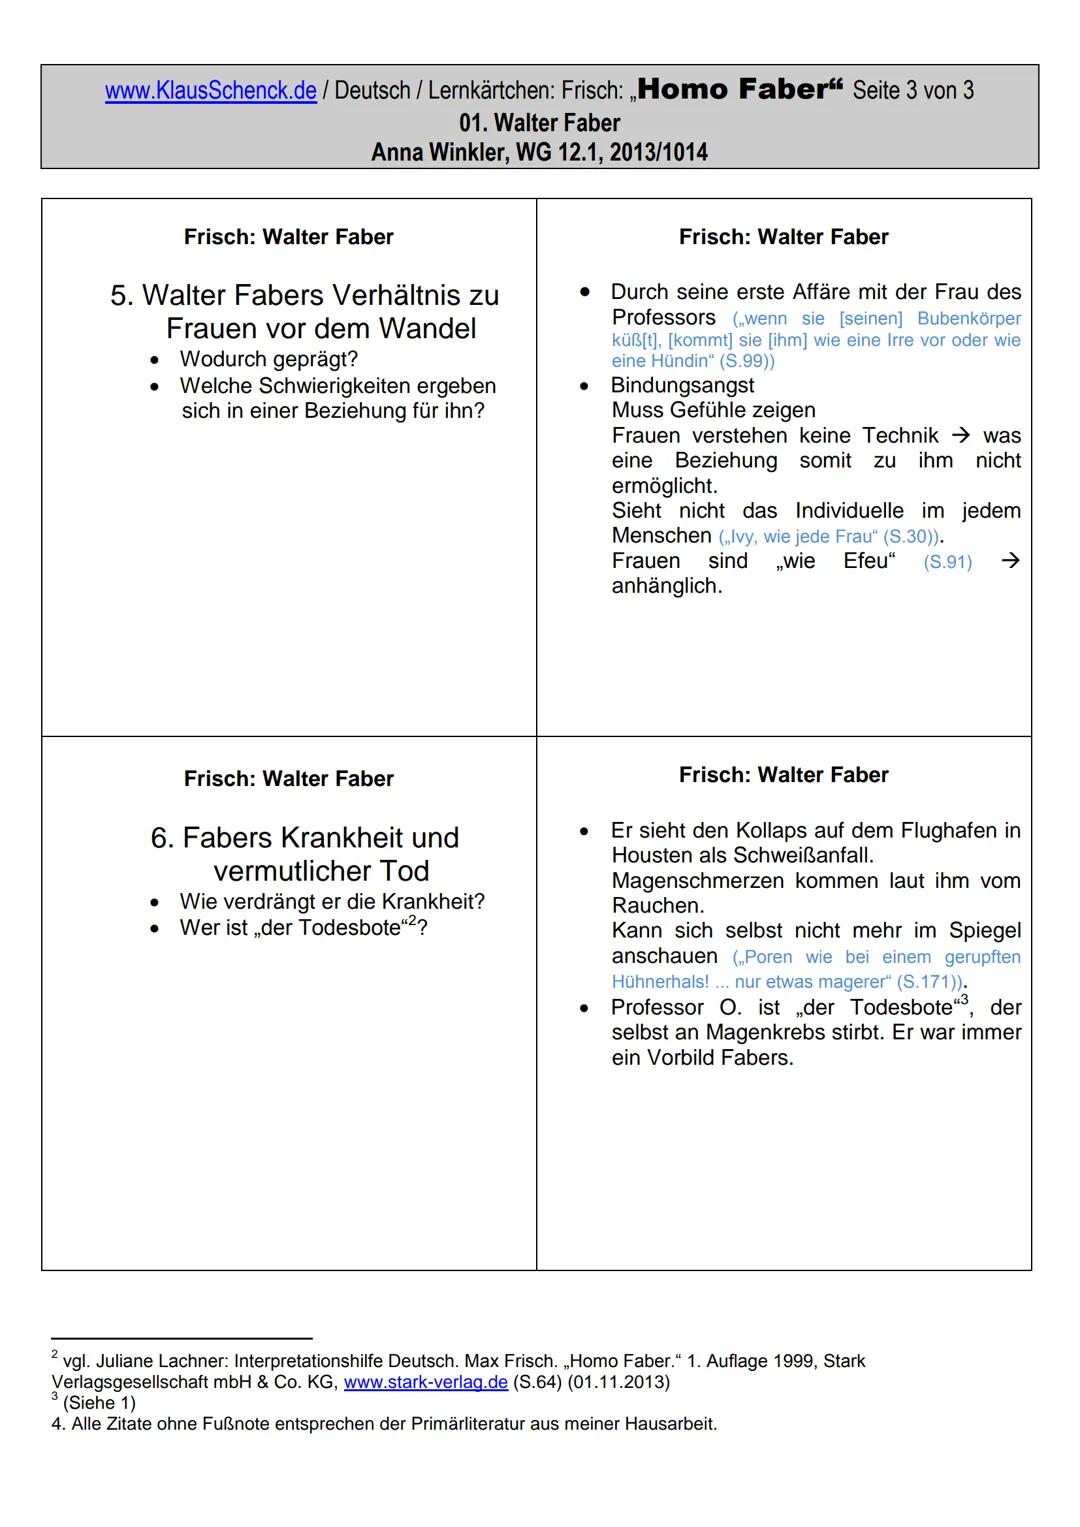 www.KlausSchenck.de/ Deutsch / Lernkärtchen: Frisch: „Homo Faber" Seite 1 von 3
01. Walter Faber
Anna Winkler, WG 12.1, 2013/1014
Lernkärtch